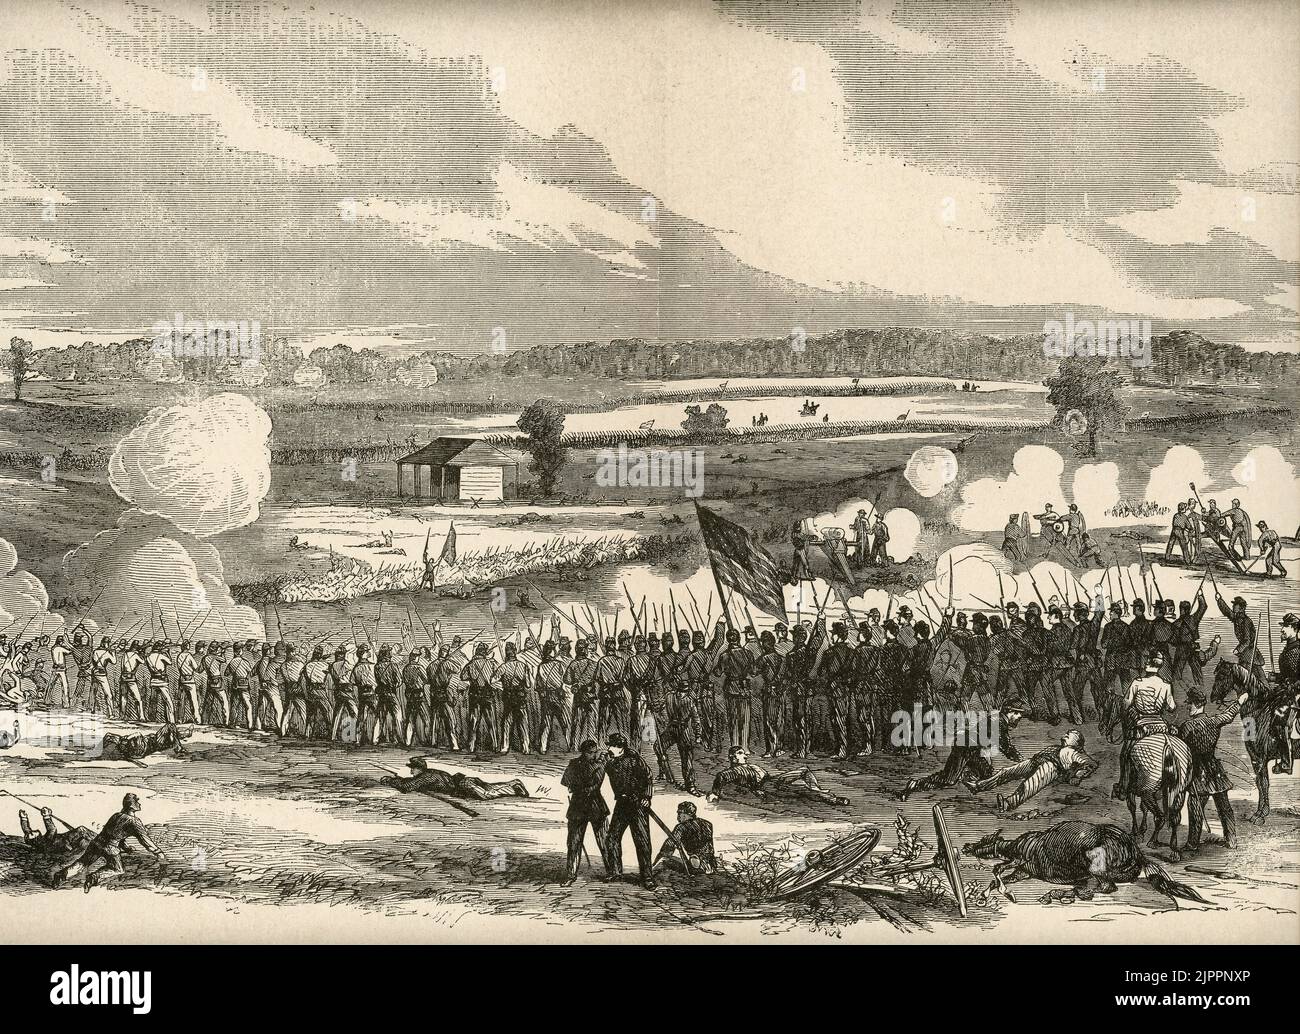 La battaglia di Perryville, Kentucky durante la guerra civile americana, combatté il 8 ottobre 1862 Foto Stock